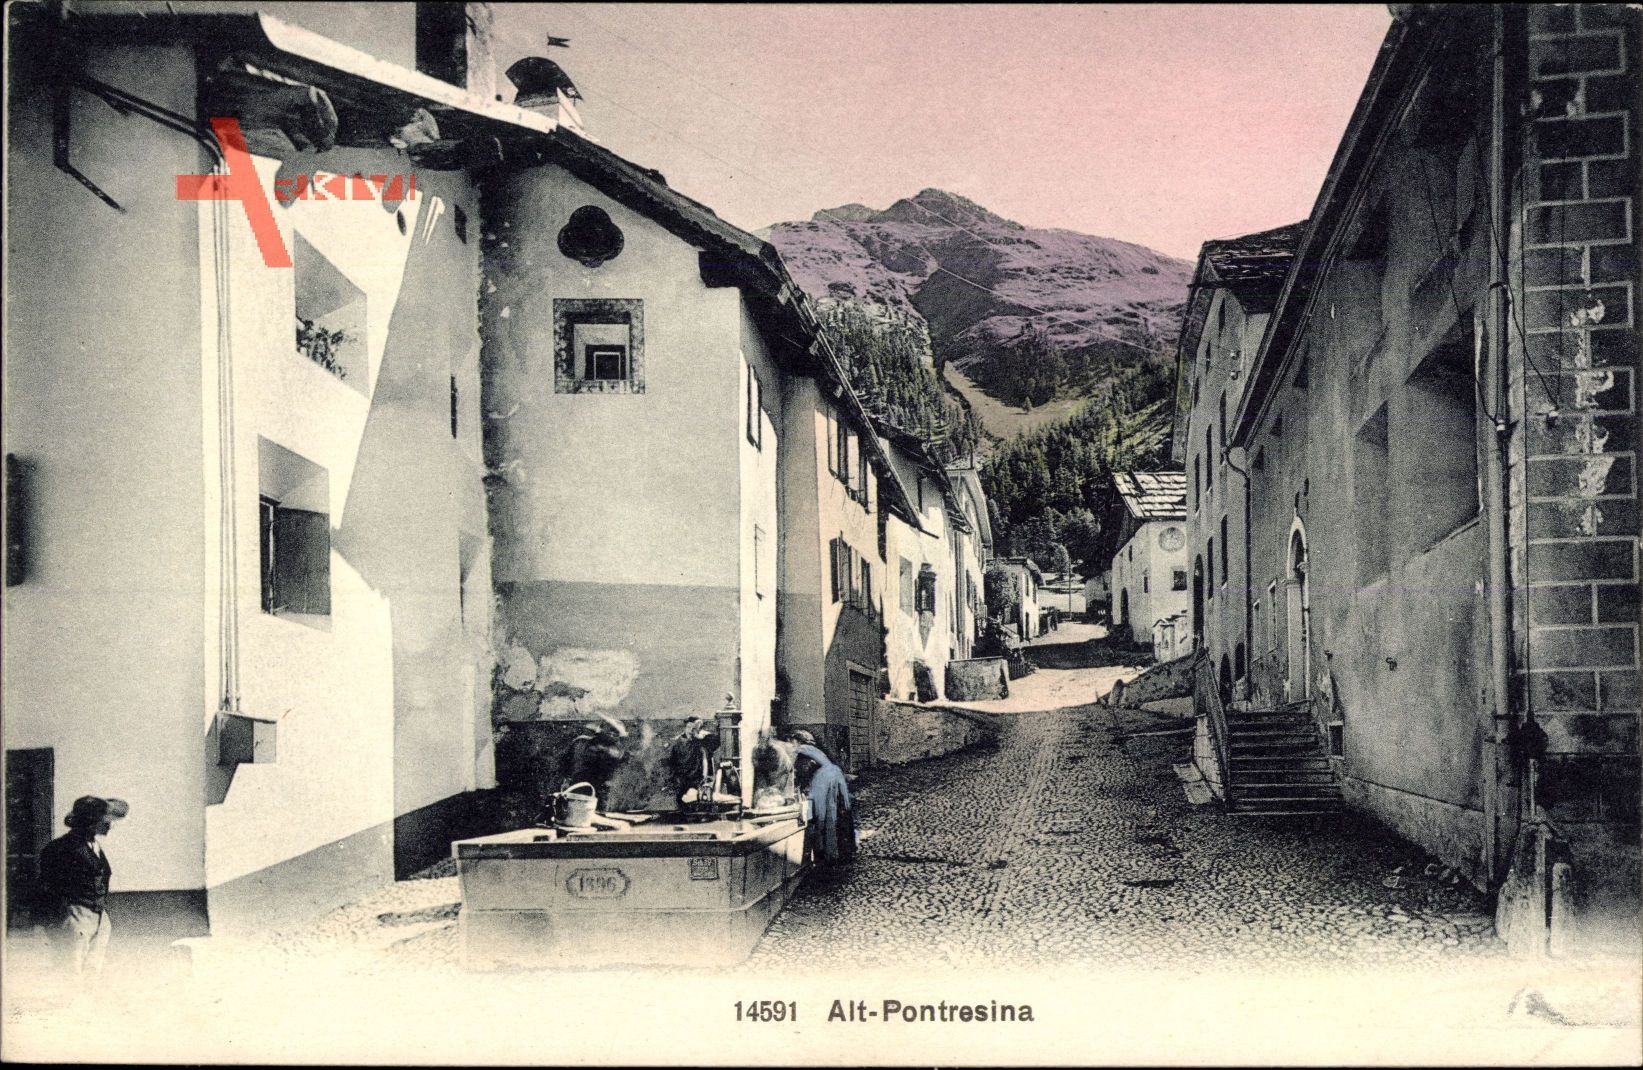 Pontresina Kt. Graubünden Schweiz, Frau am Brunnen, Häuser